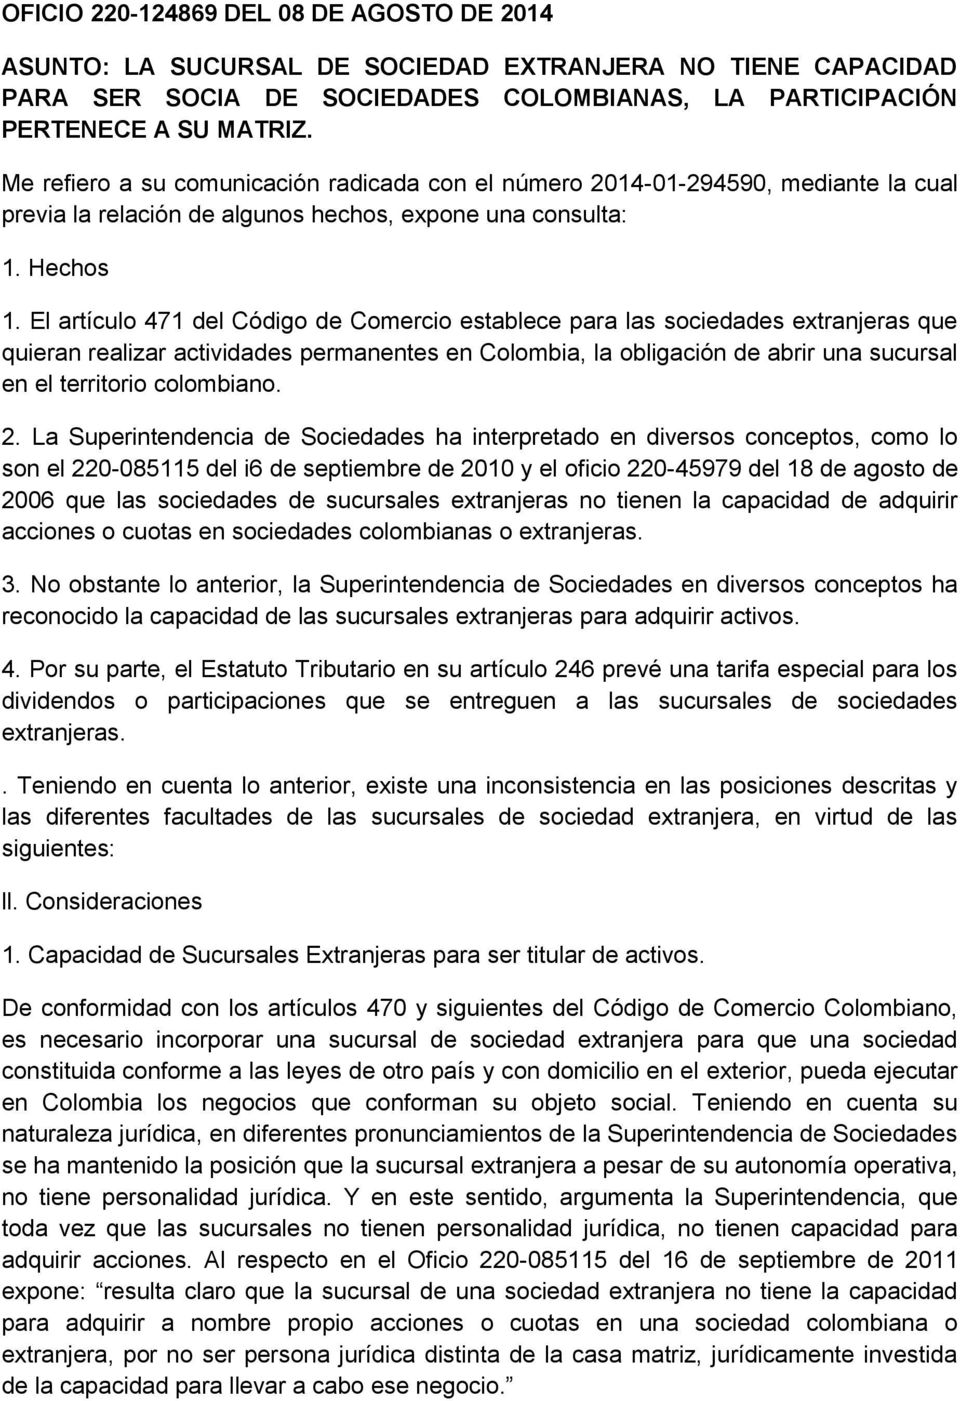 El artículo 471 del Código de Comercio establece para las sociedades extranjeras que quieran realizar actividades permanentes en Colombia, la obligación de abrir una sucursal en el territorio